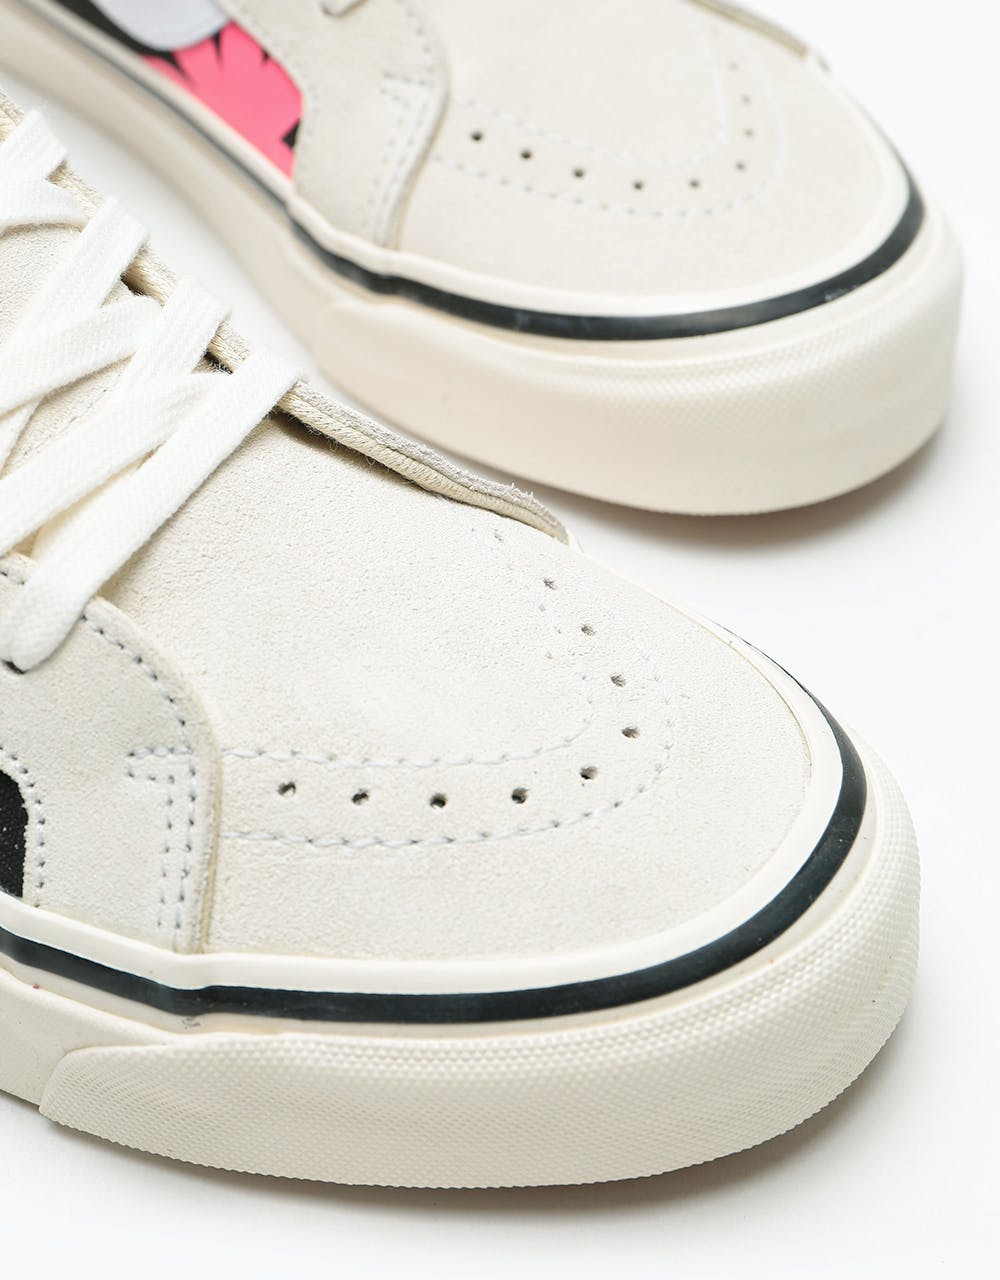 Vans Sk8-Hi 38 DX Skate Shoes - (Anaheim Factory) OG White/OG Black/Summer Leaf